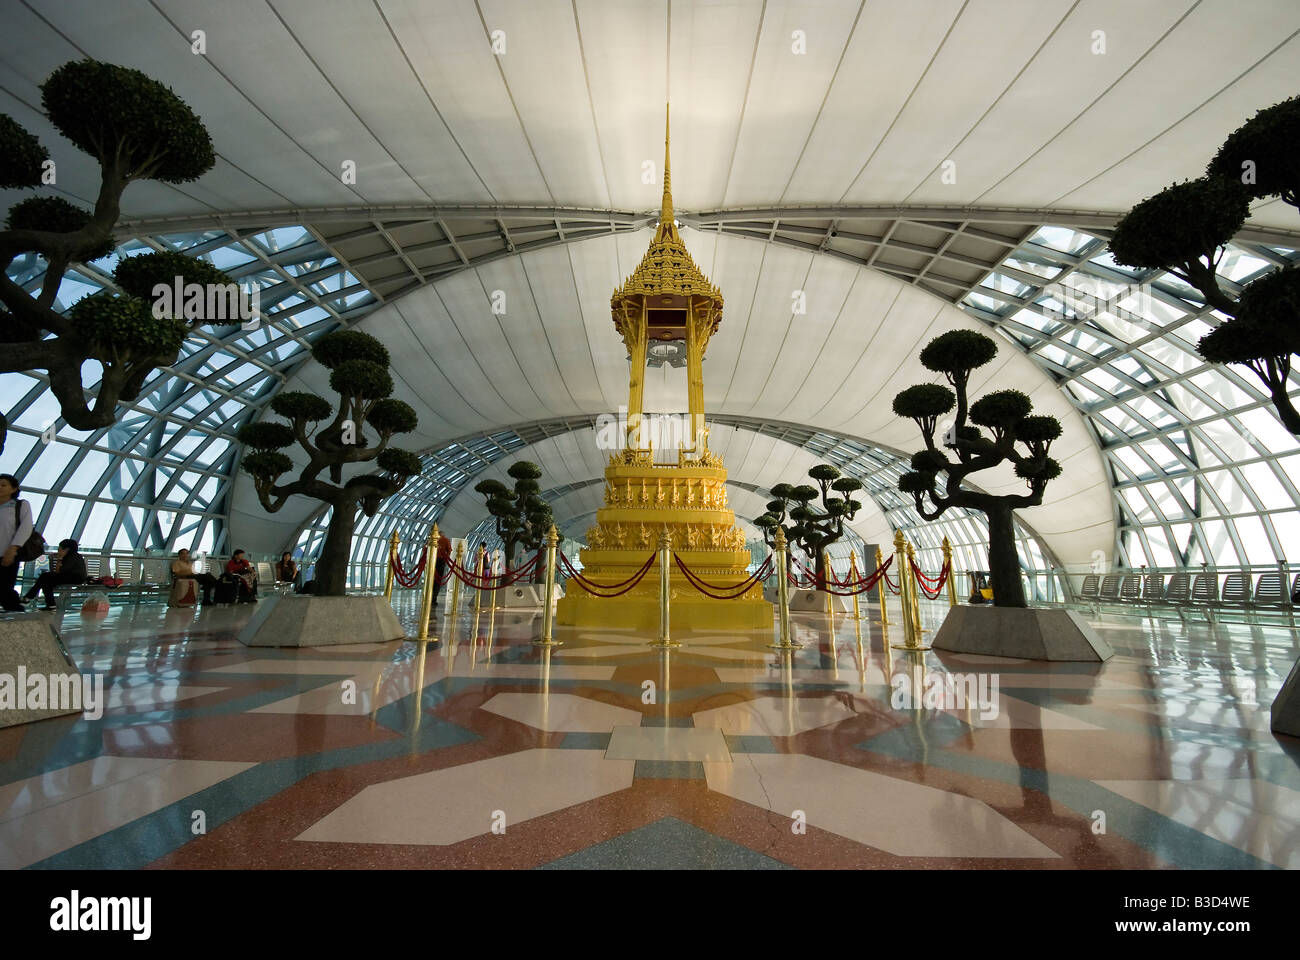 View inside Suwanapoom airport Bangkok Thailand Stock Photo